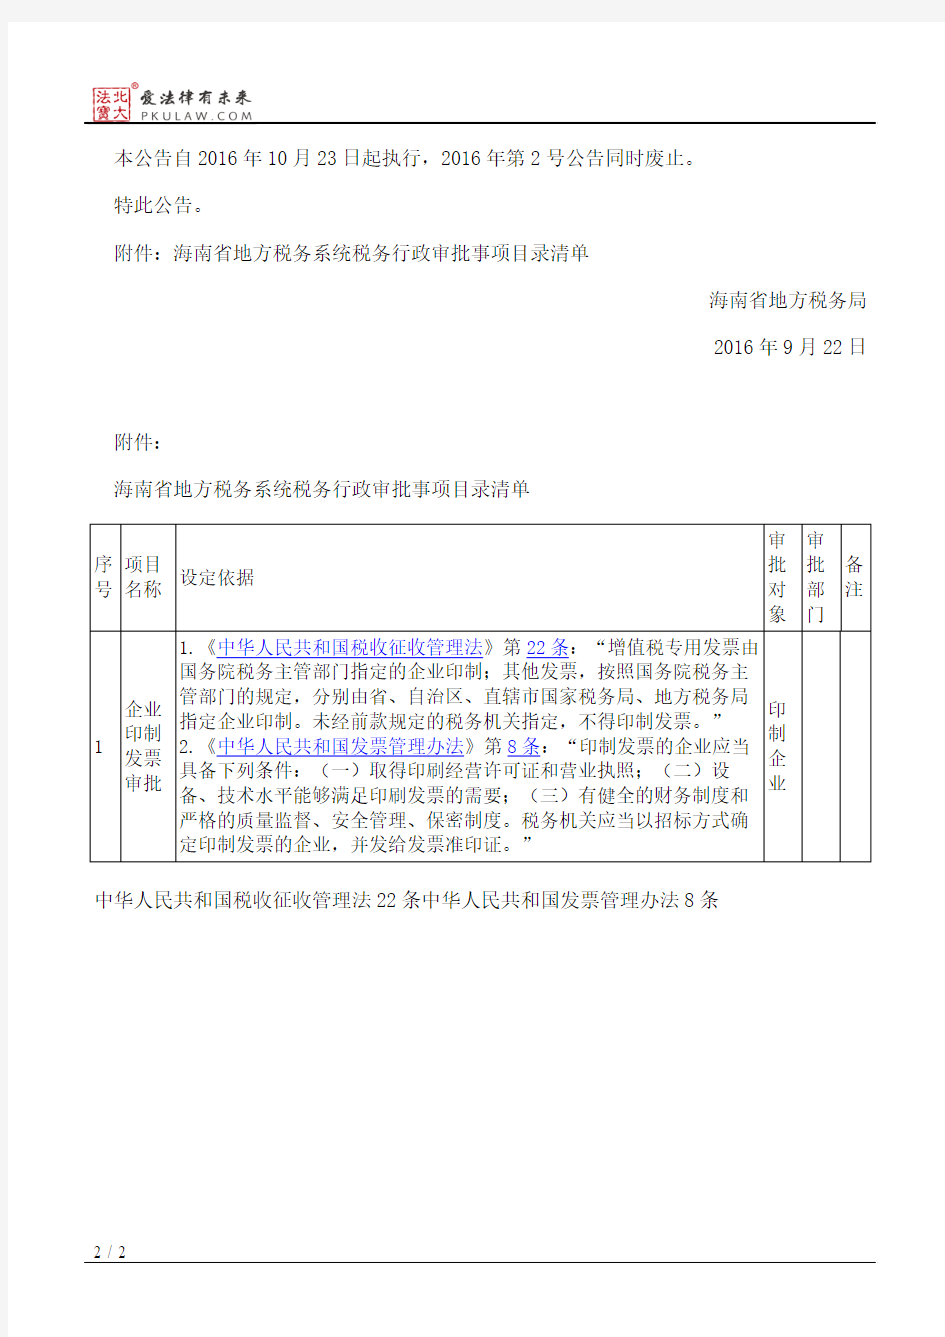 海南省地方税务局公告2016年第6号――关于调整行政审批事项目录清